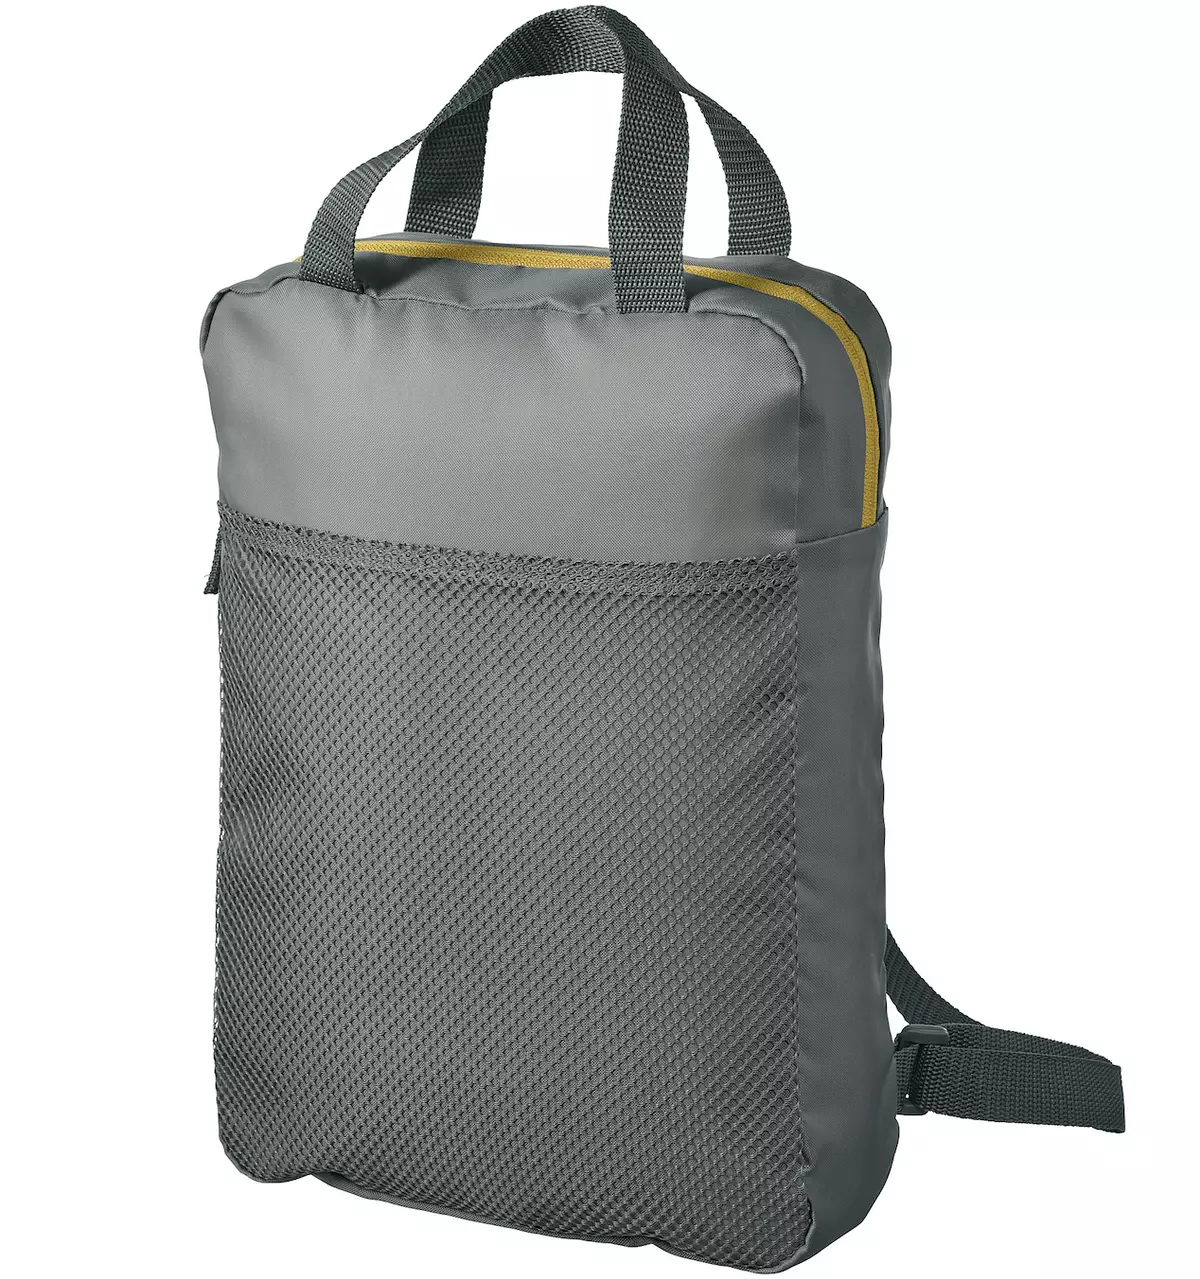 IKEA Backpacks: მიმოხილვა შავი backpack-ჩემოდანი ბორბლები და სხვა მოდელები, როგორ ზრუნვა 15421_22